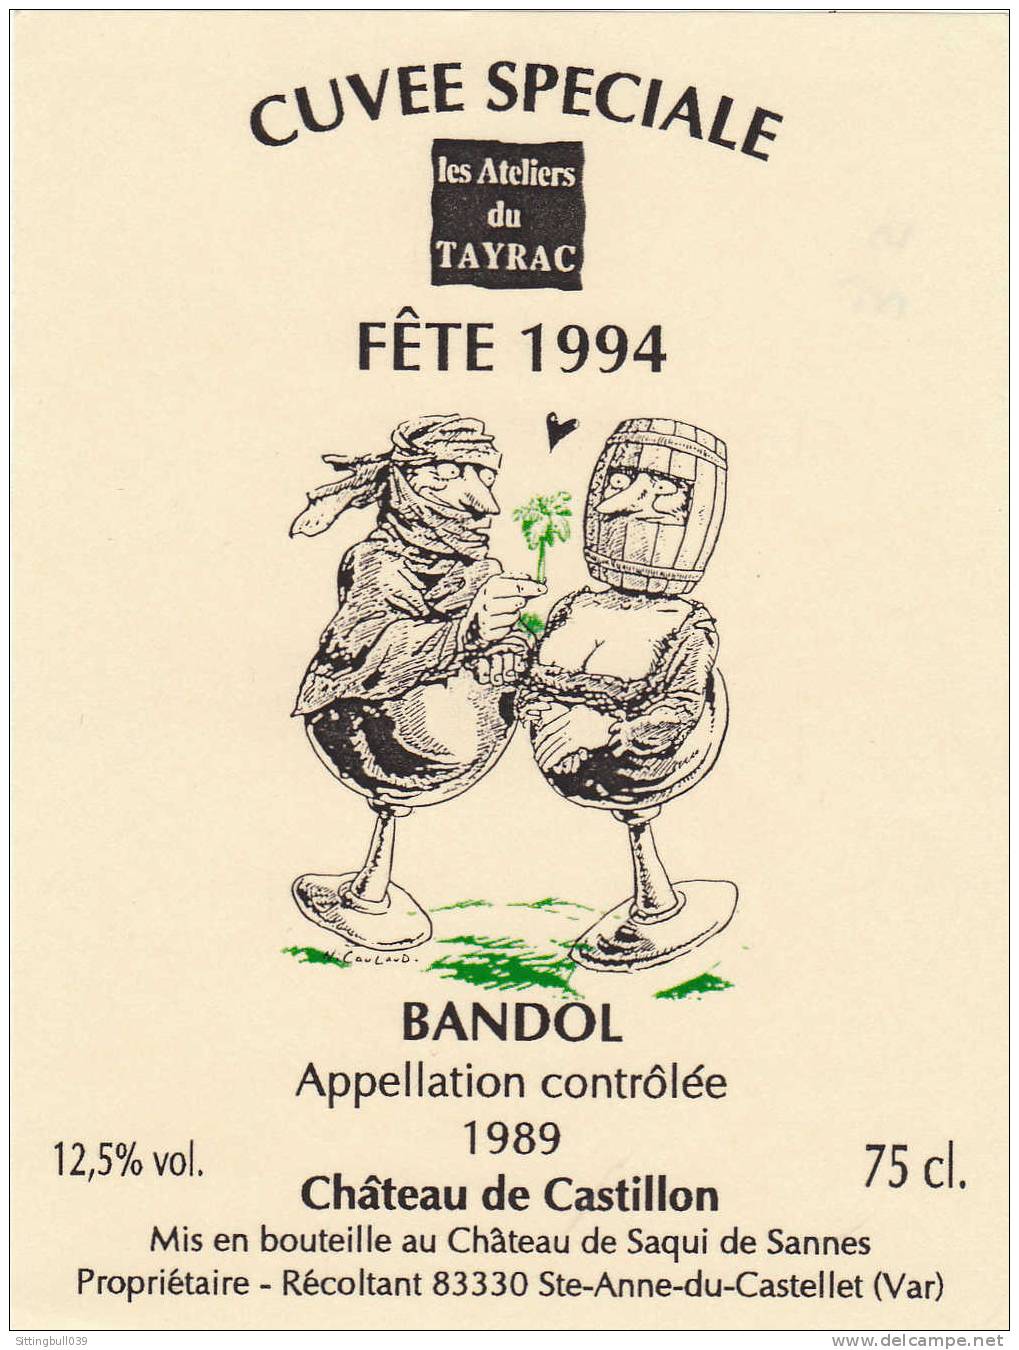 NICOULAUD. Etiquette De Vin, Cuvée Spéciale Les Ateliers Du Tayrac, Fête 1994. Château De Castillon Pour Un BANDOL 1989. - Objets Publicitaires